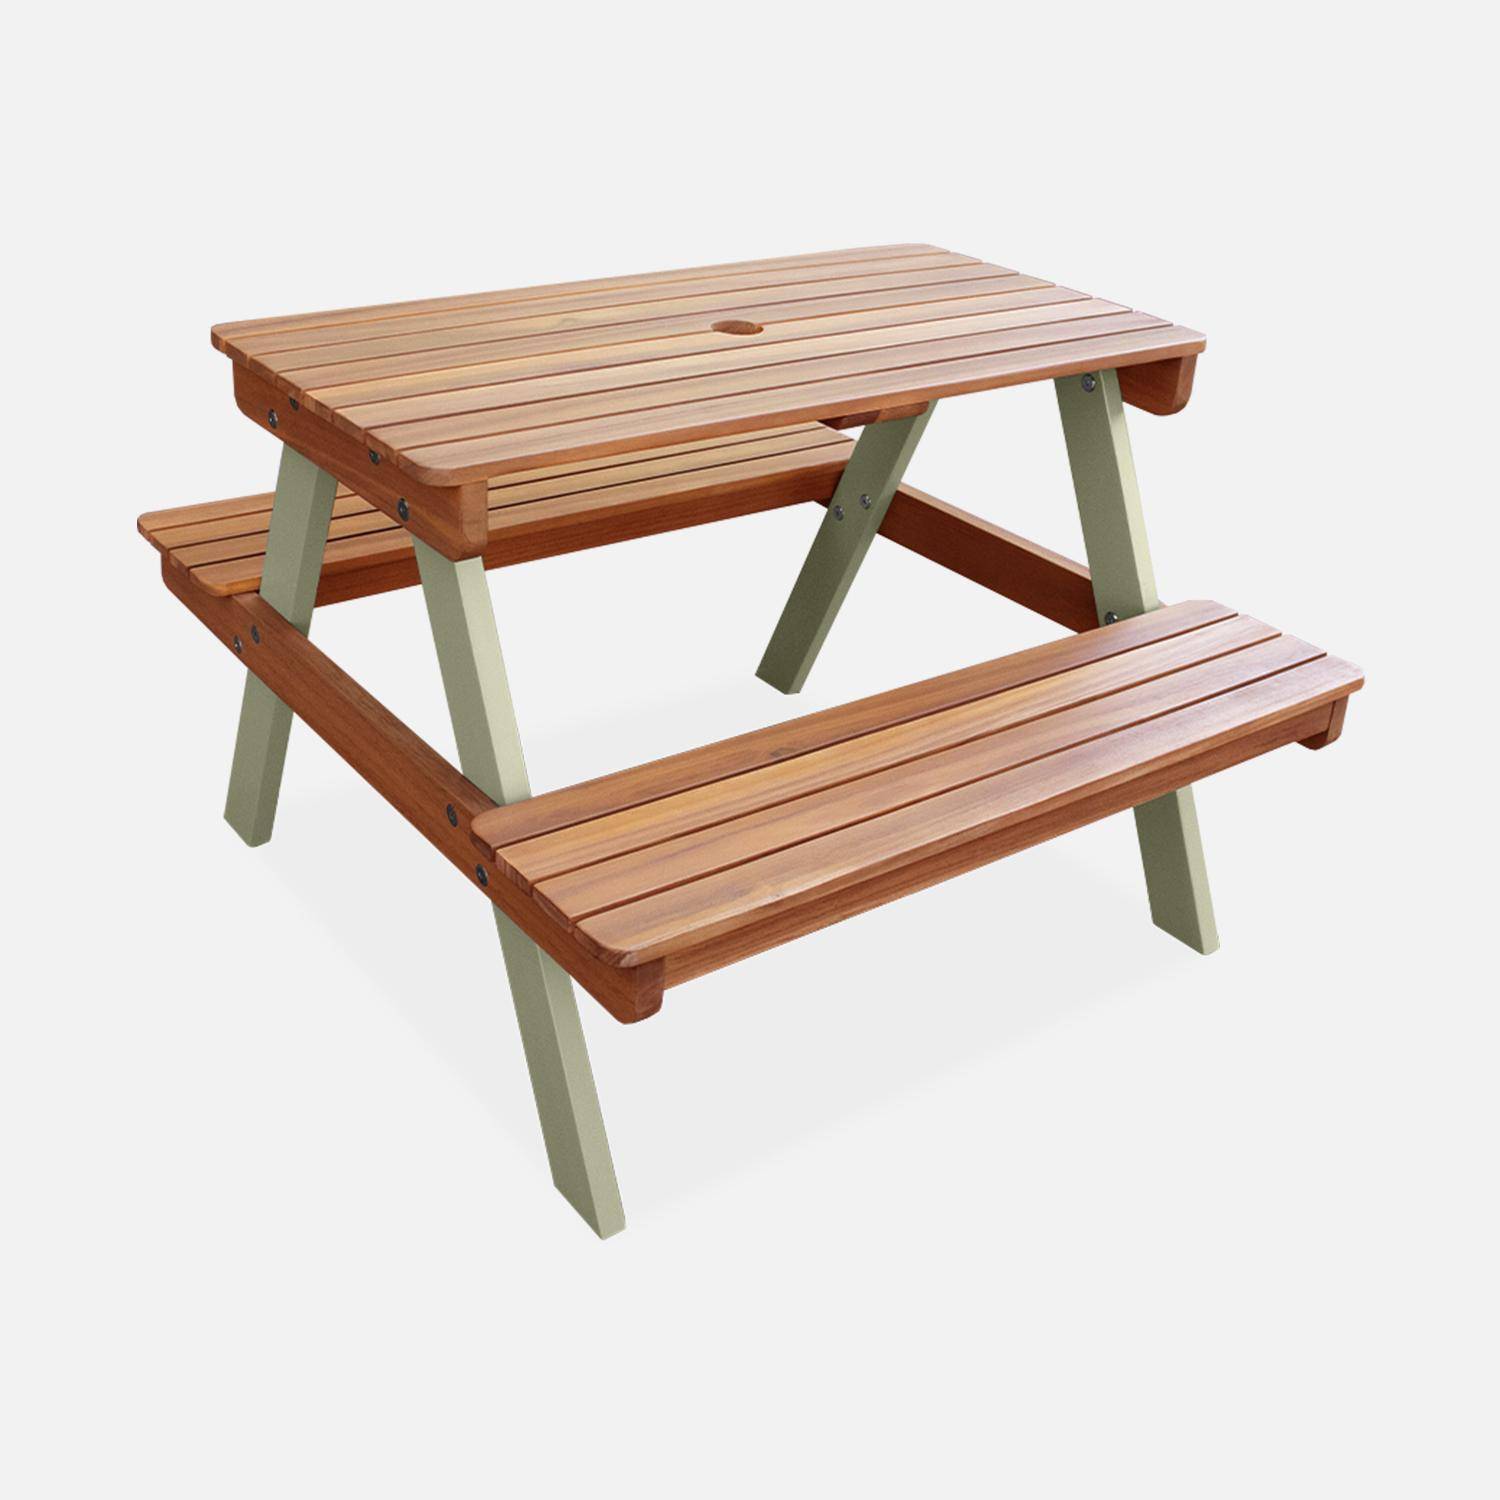 Picknicktisch aus hellem Akazienholz für Kinder, 2 Sitzplätze, naturfarben und graugrün Photo3